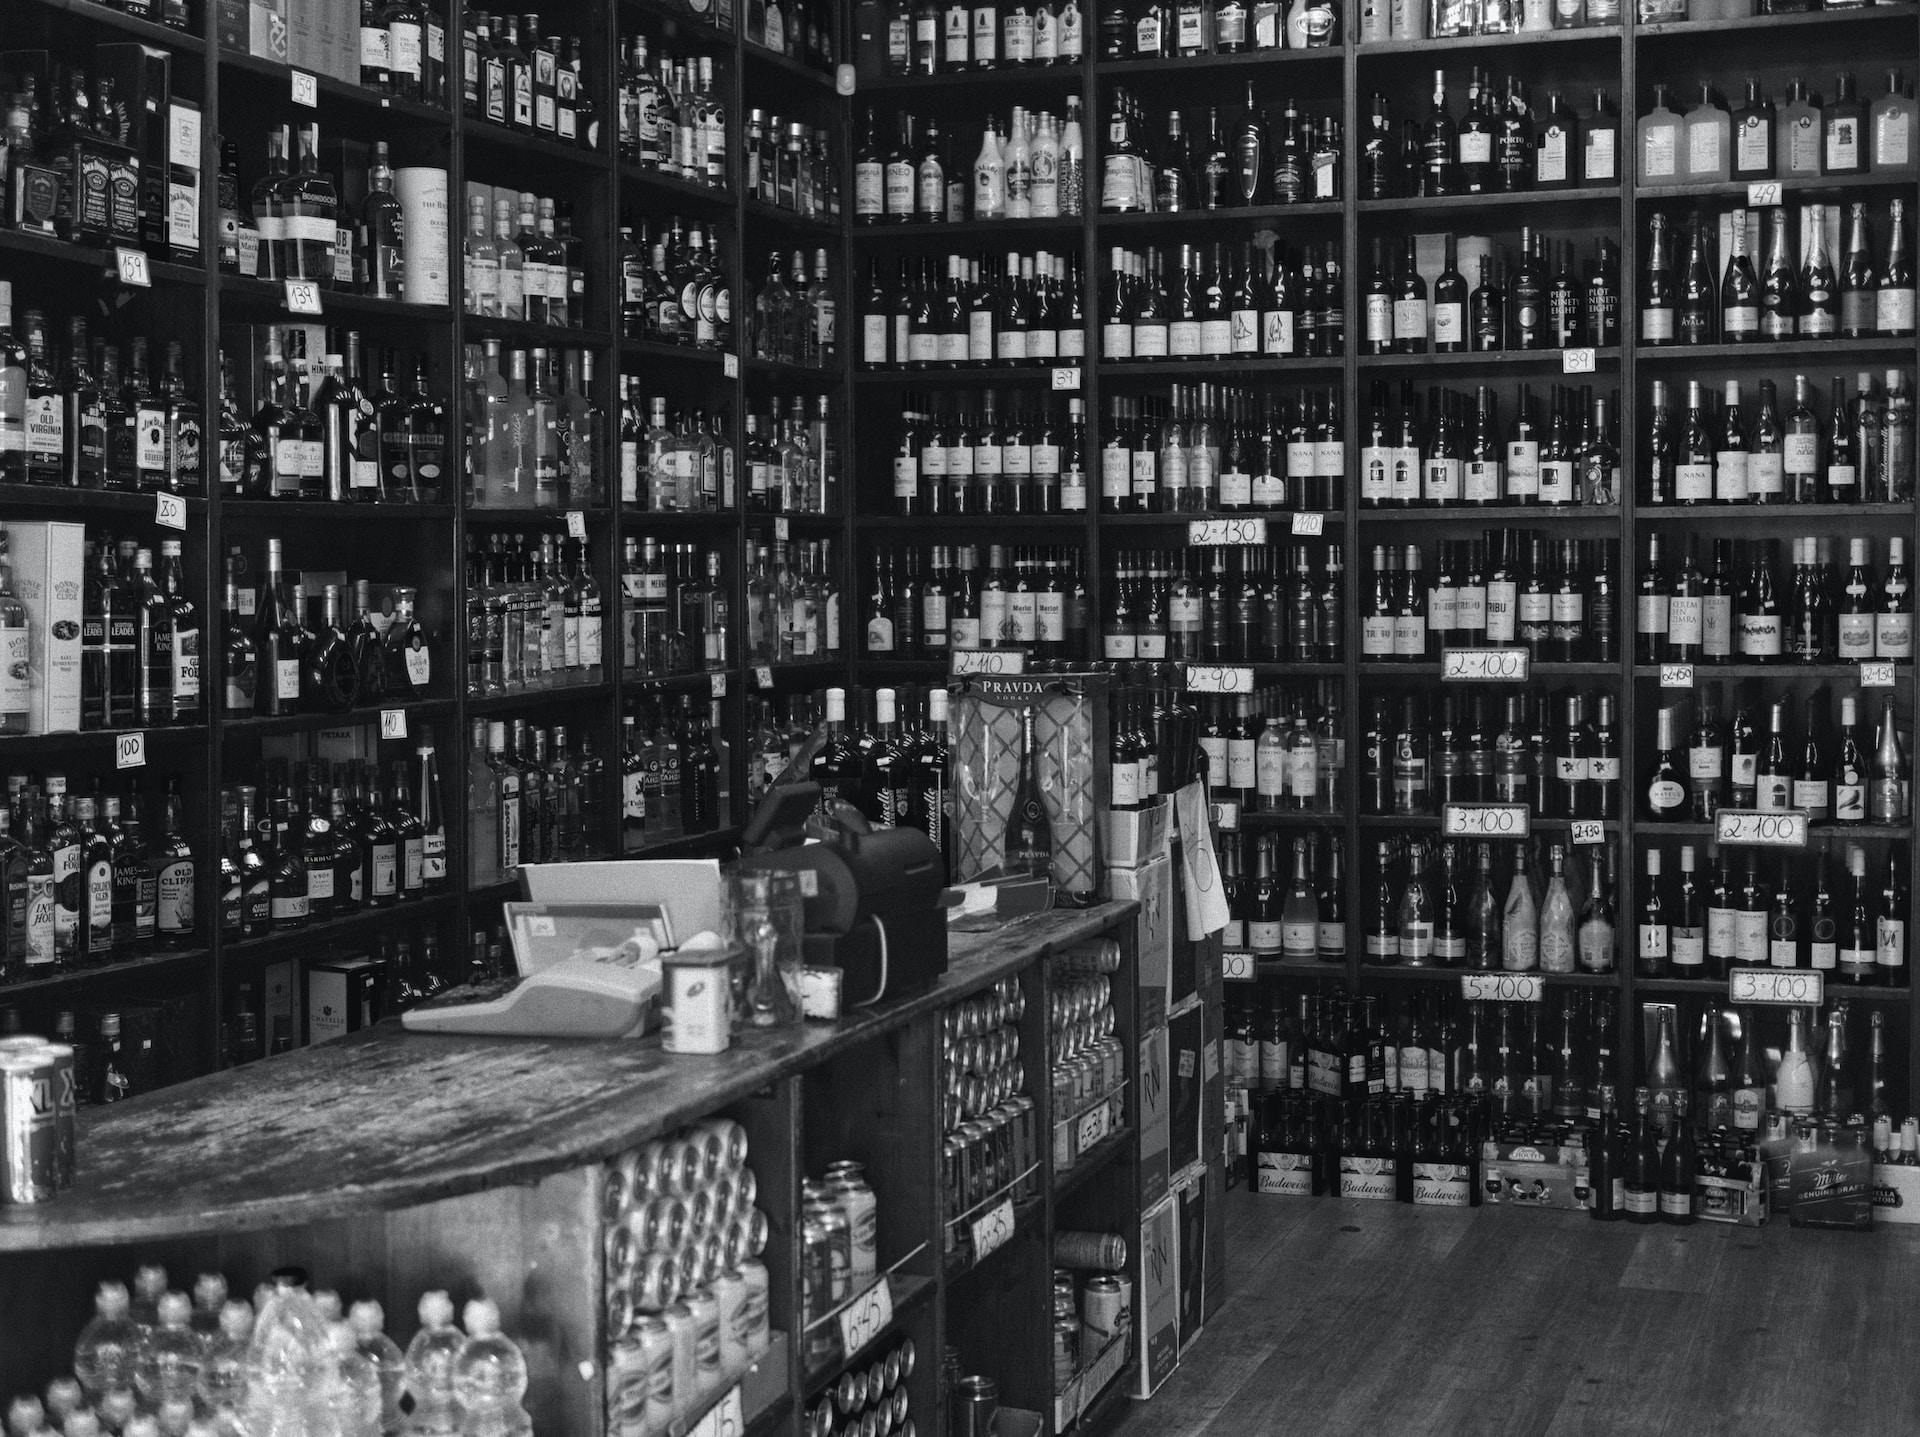 Schwarz-weiß Bild von Regalen voller Weinflaschen